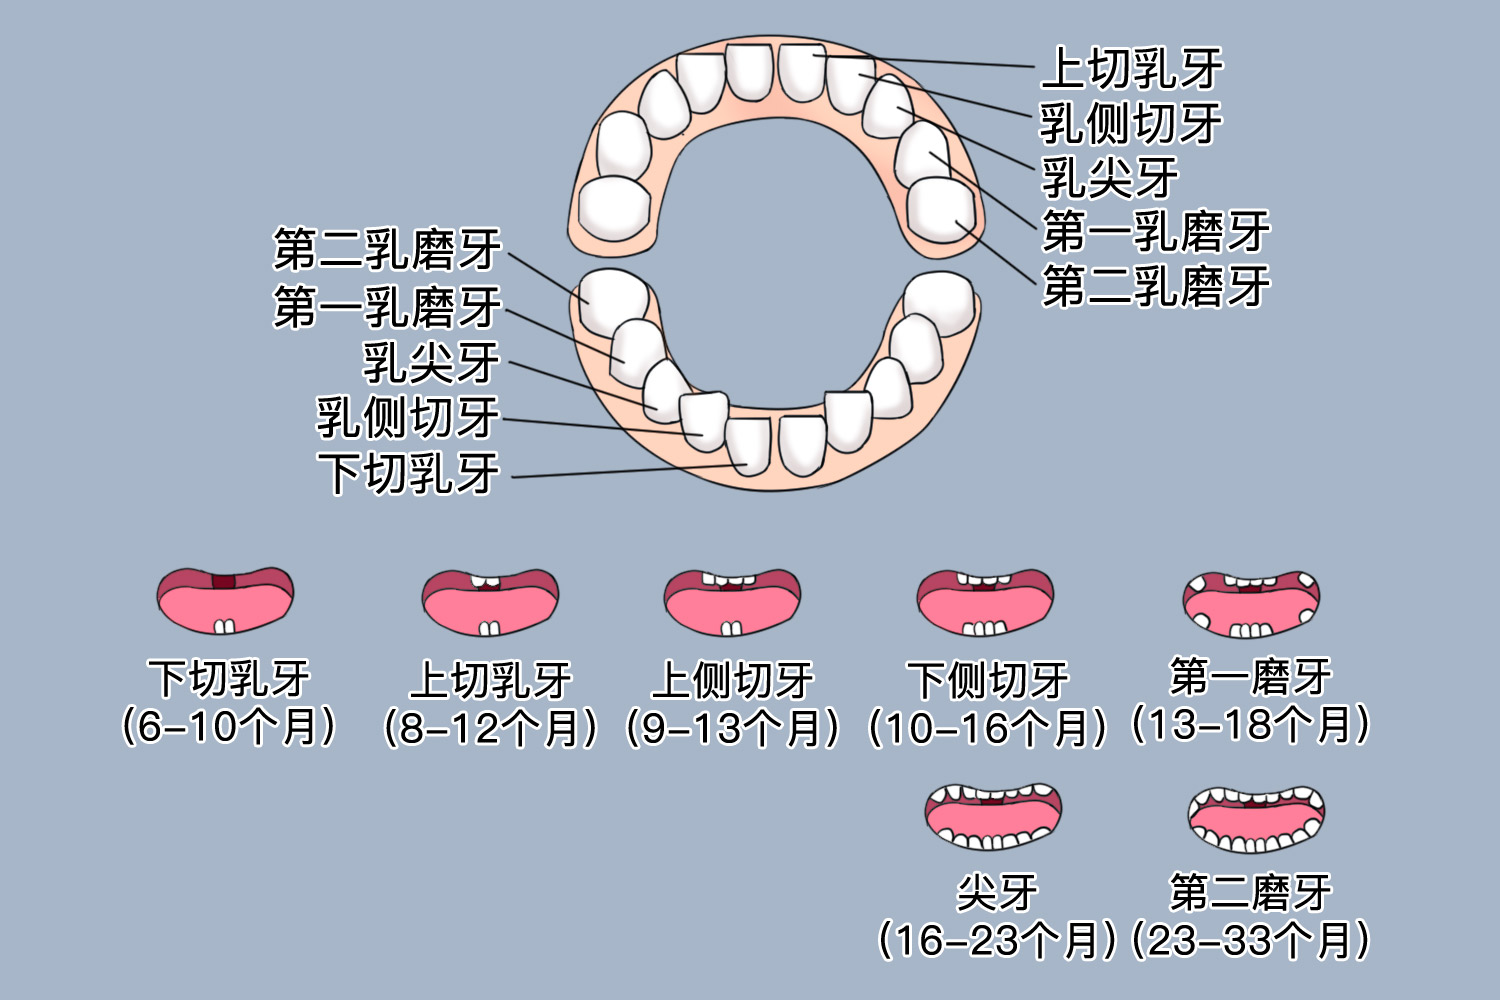 儿童牙齿分为乳牙和恒牙,乳牙在上,下颌的左右侧均各有5颗,共20颗乳牙